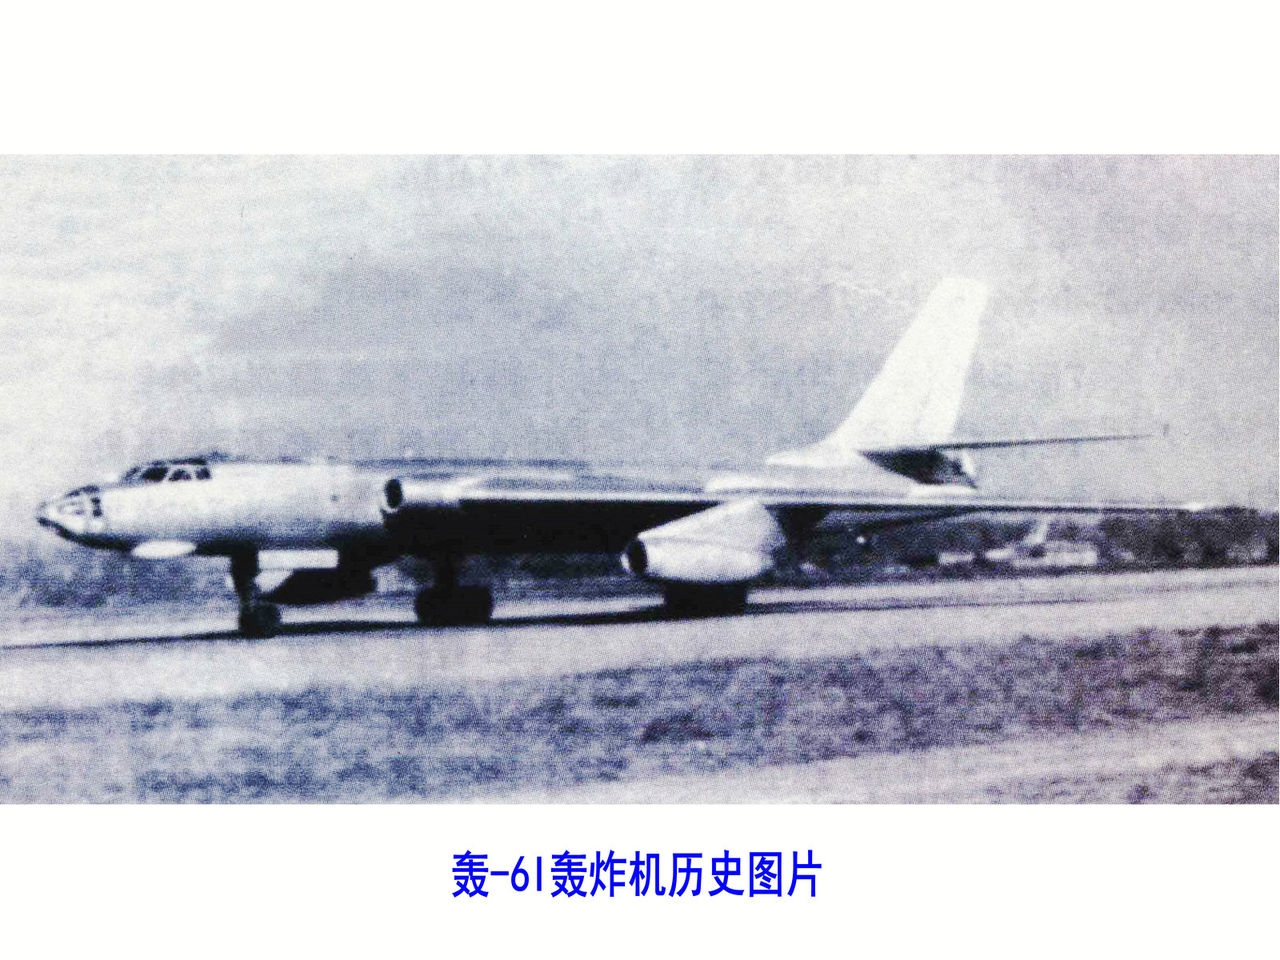 轟-6I轟炸機歷史圖片